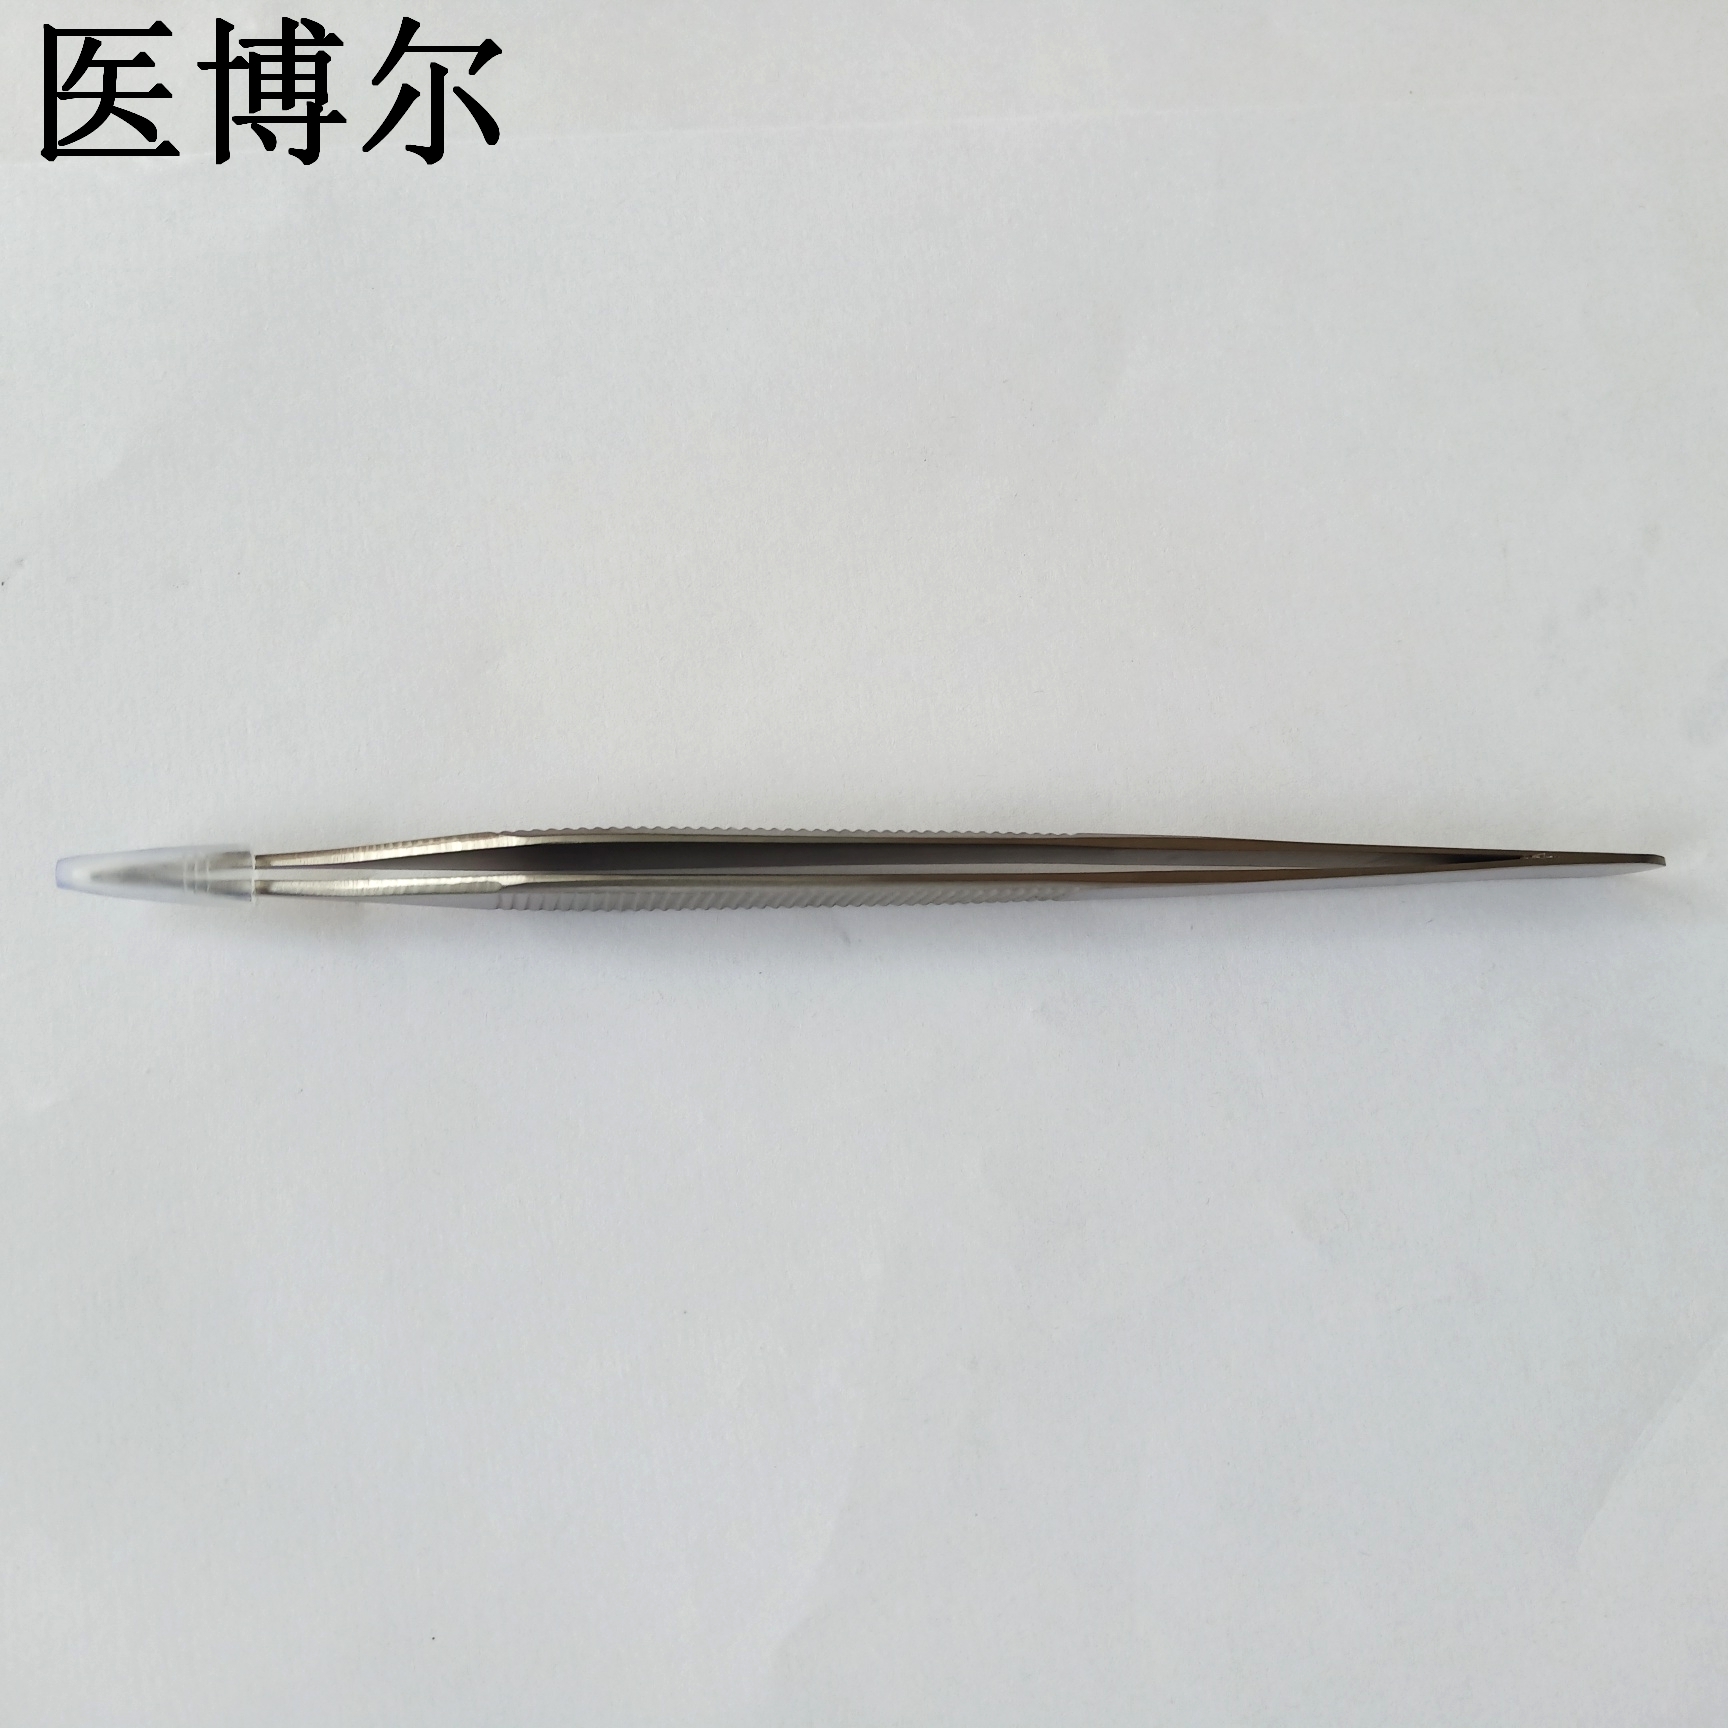 14cm整形镊0 (7)_看图王.jpg